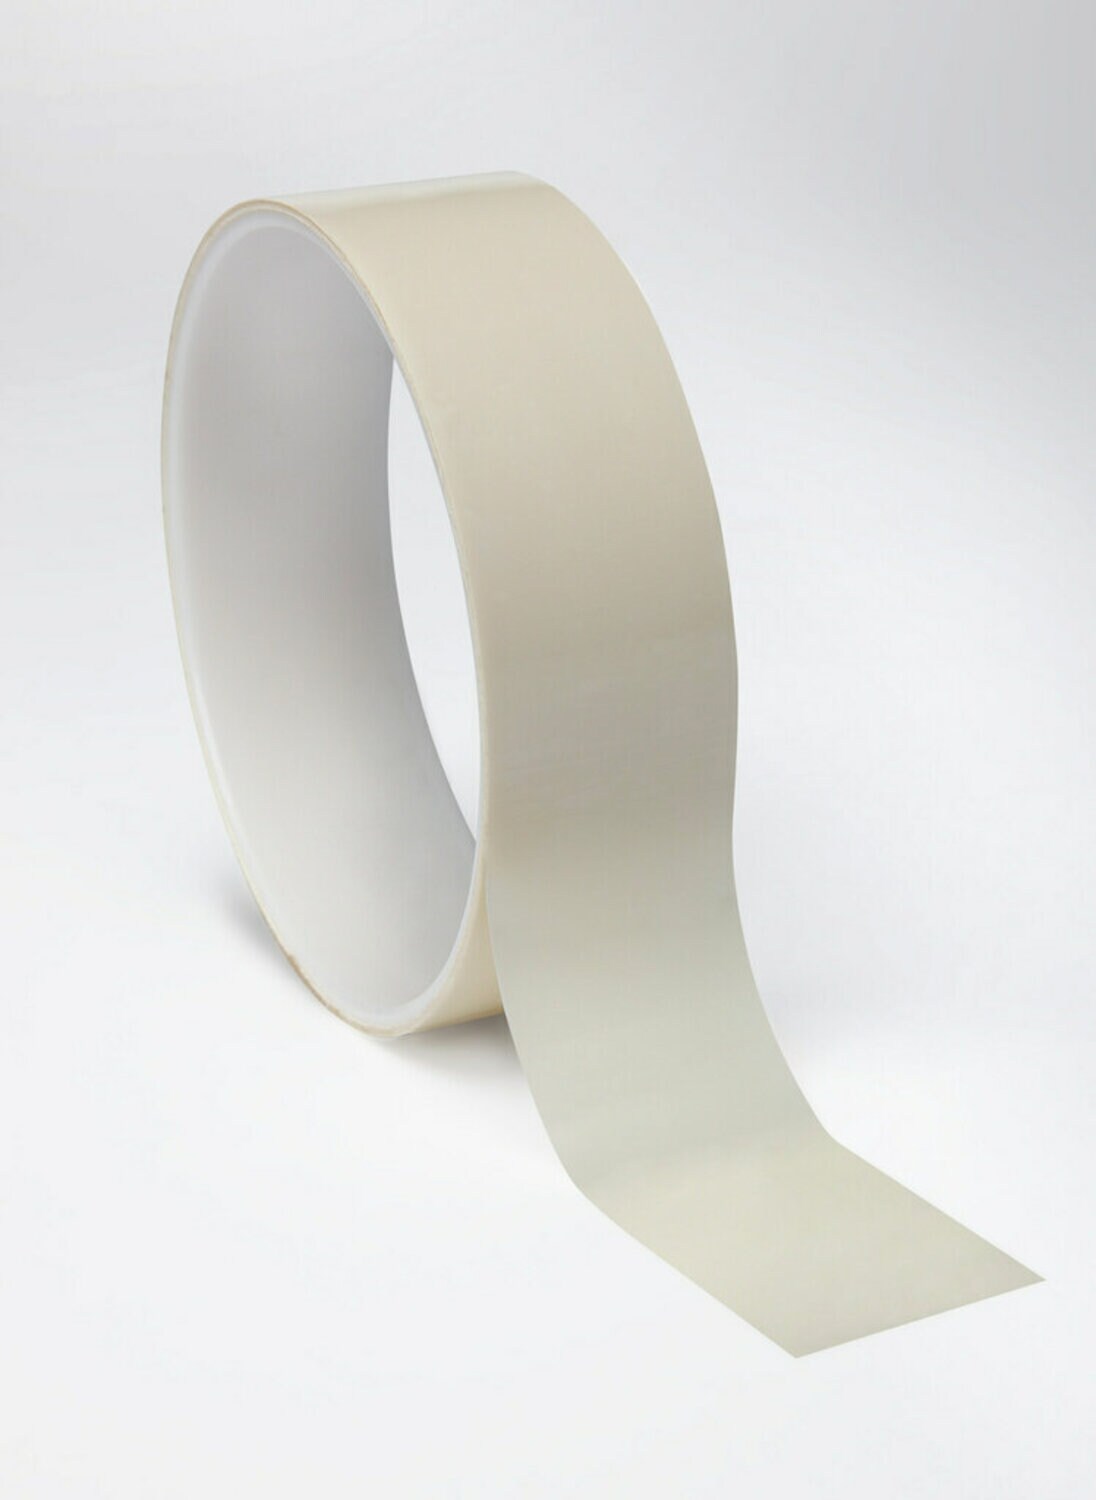 7010045066 - 3M Polyester Film Tape 854 White, 1 in x 72 yds, 2.7 mil, 36/Case, Bulk